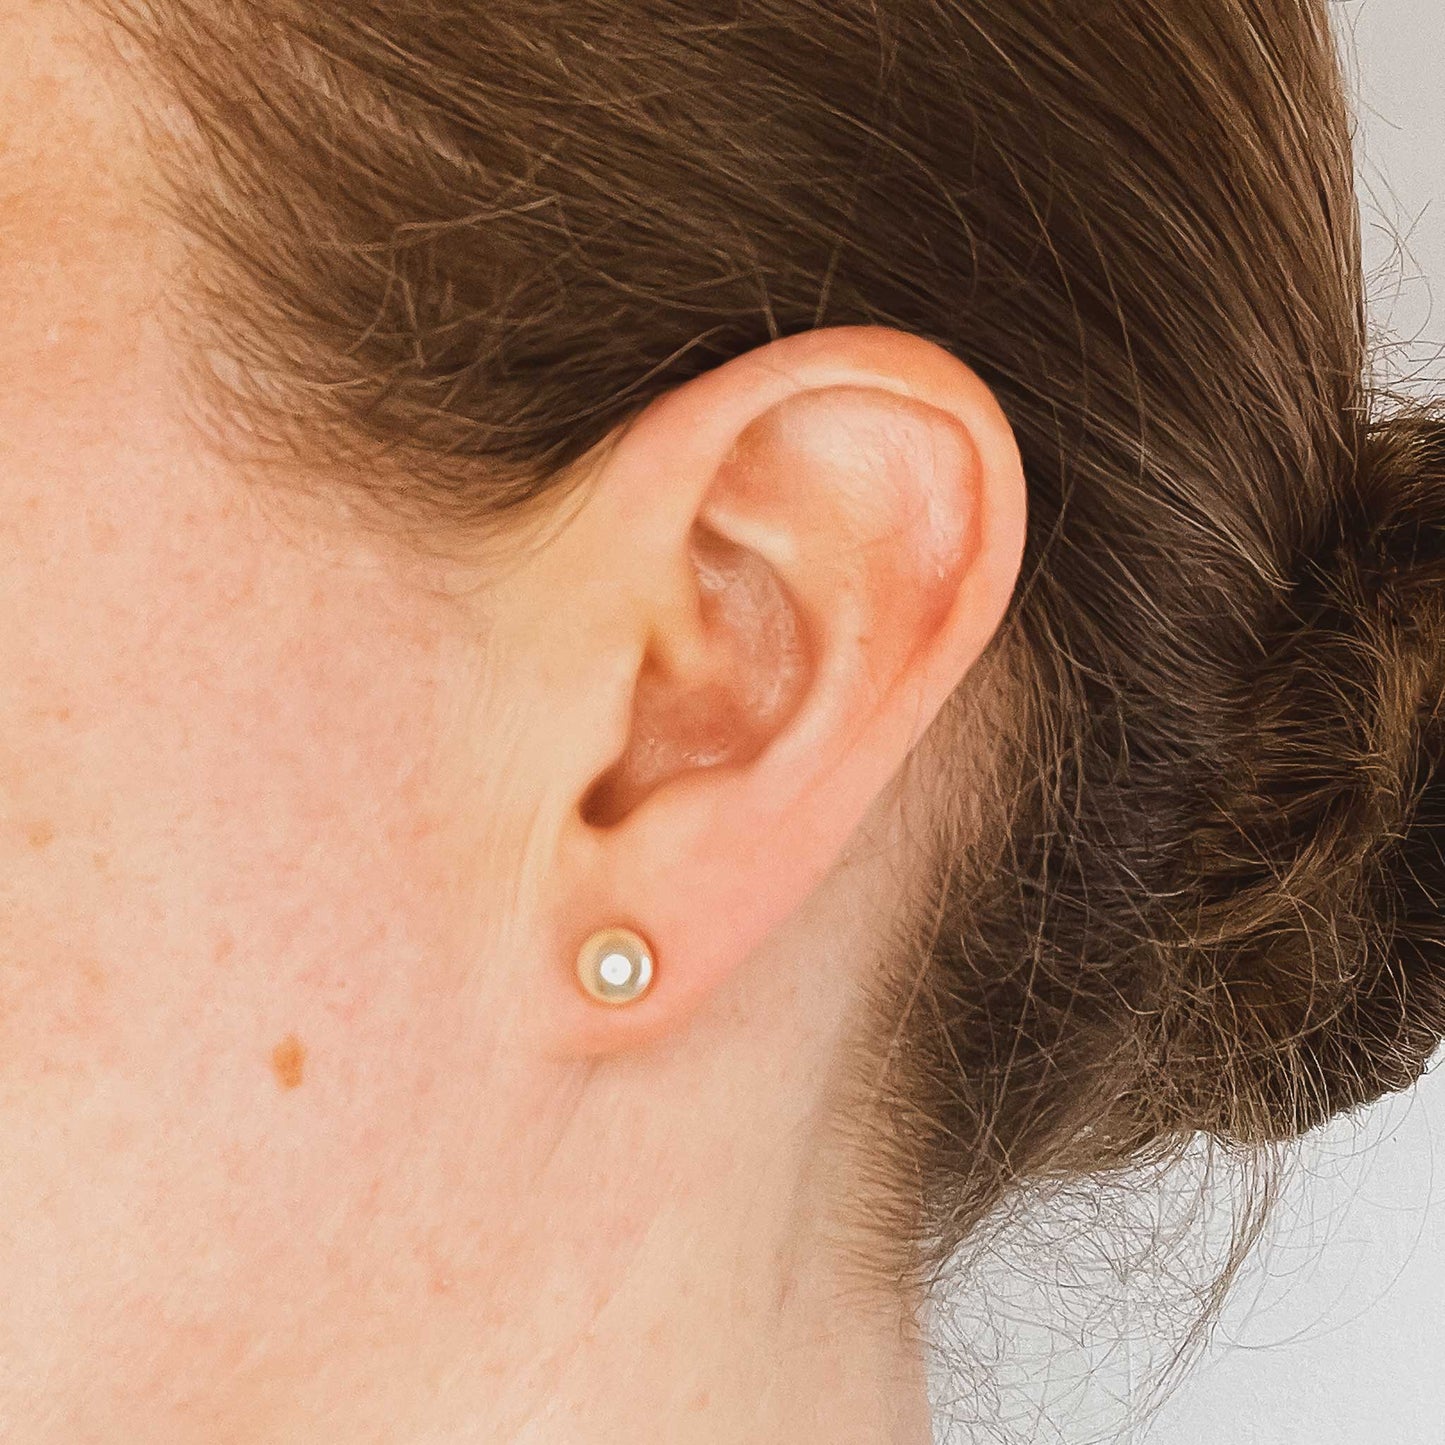 Woman wearing 6mm faux pearl stud earring in earlobe